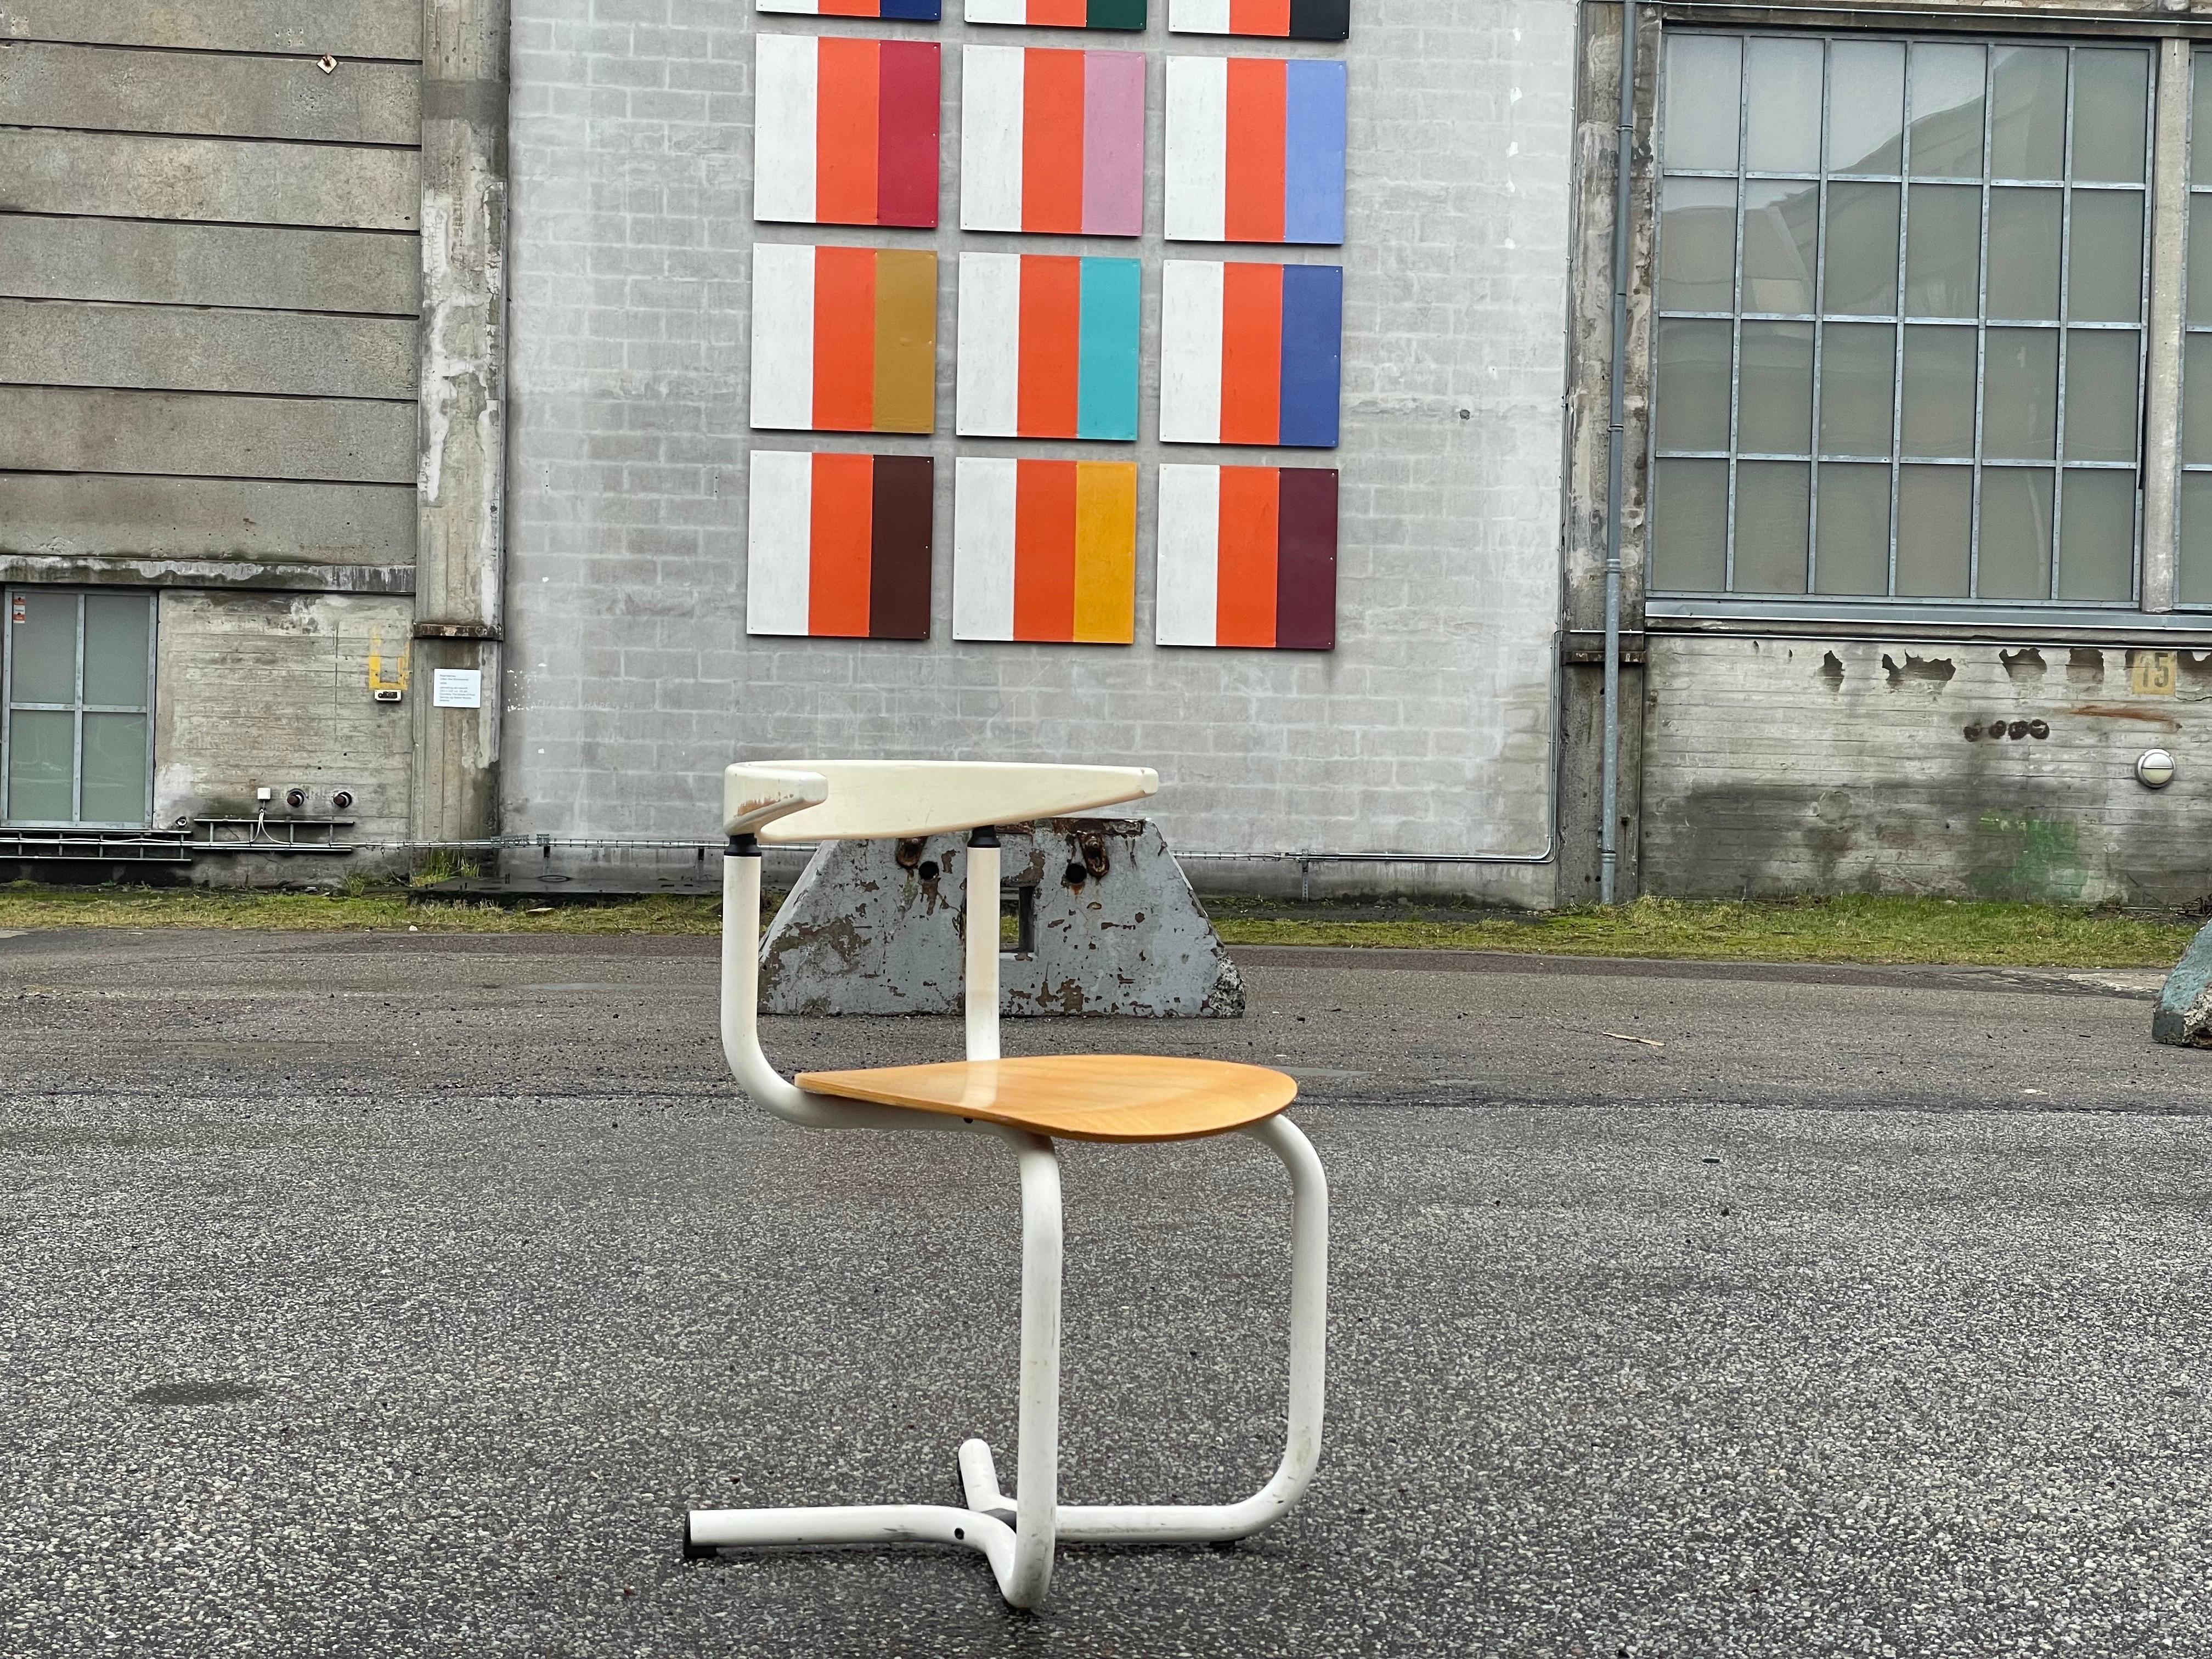 Des années 1980 - une chaise de bureau danoise moderne qui allie sans effort la forme et la fonction. Fabriquée avec un sens aigu du design, cette chaise témoigne des sensibilités esthétiques de l'époque. Ses lignes épurées et sa structure innovante